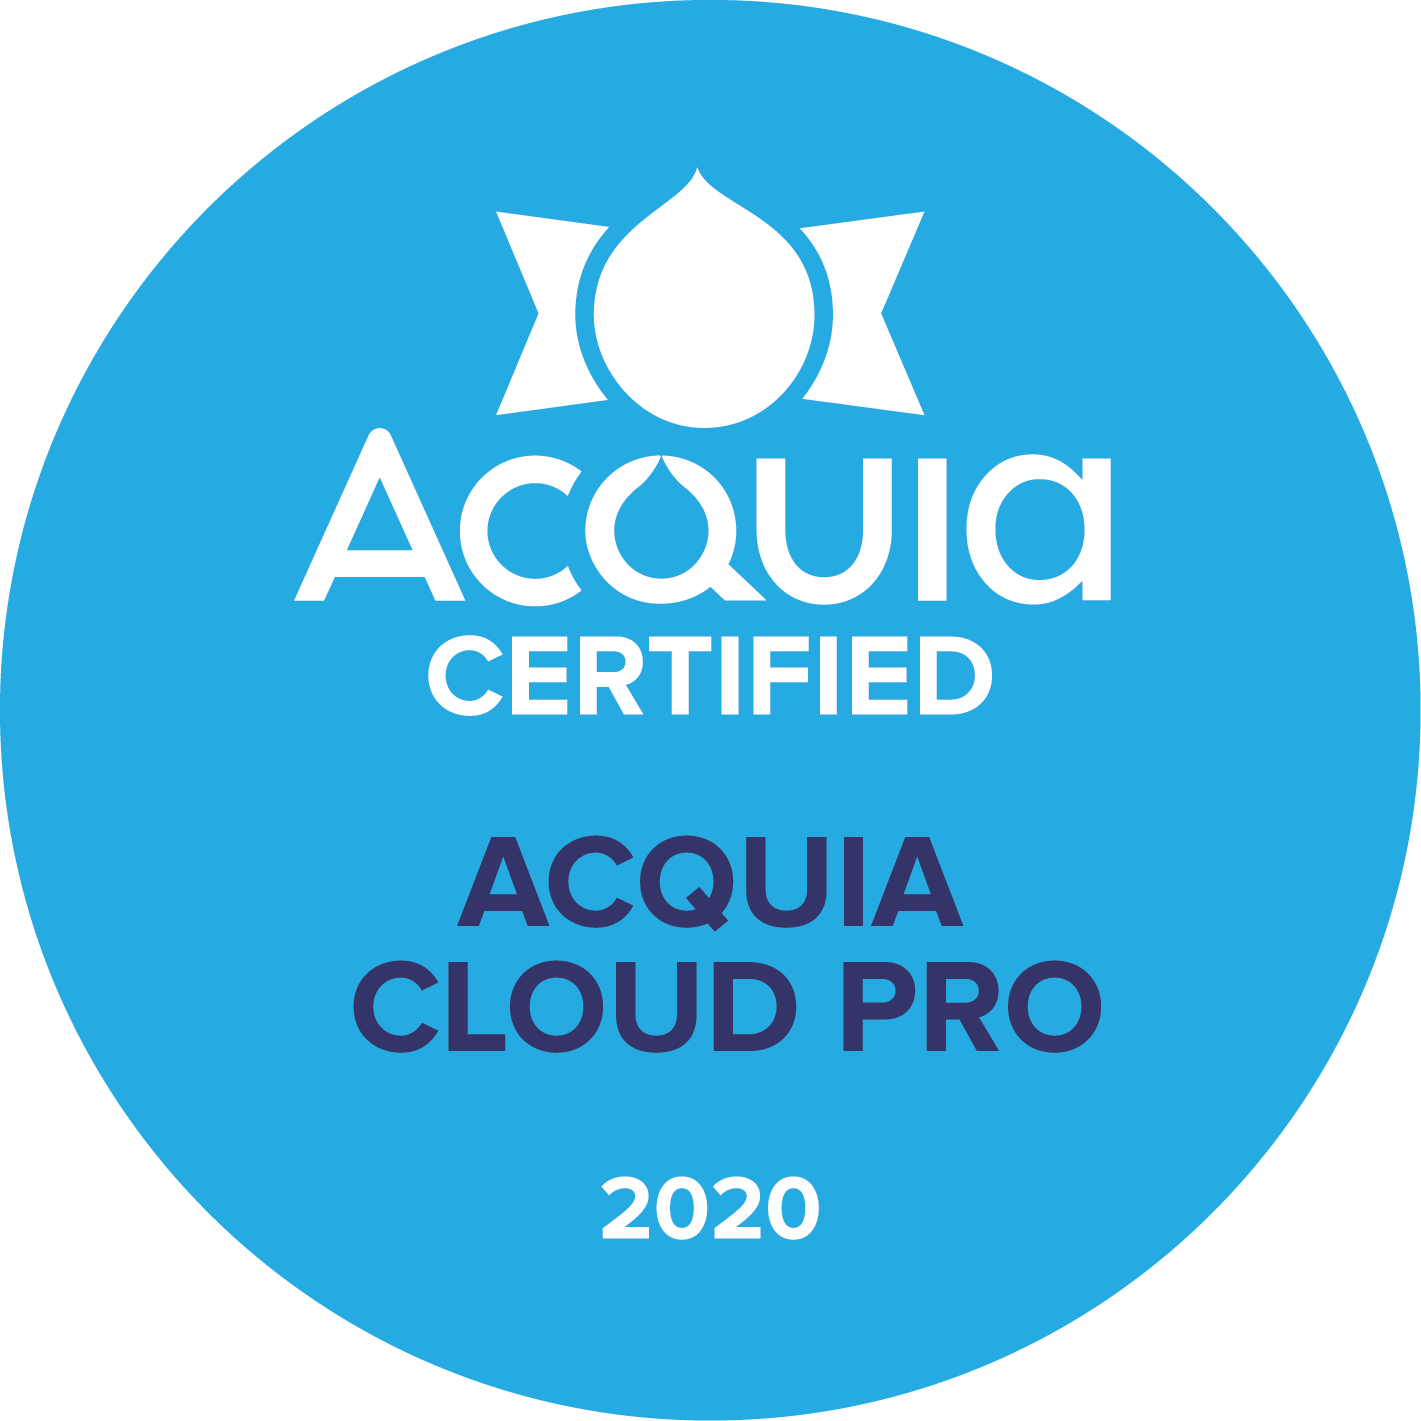 Acquia certified cloud pro